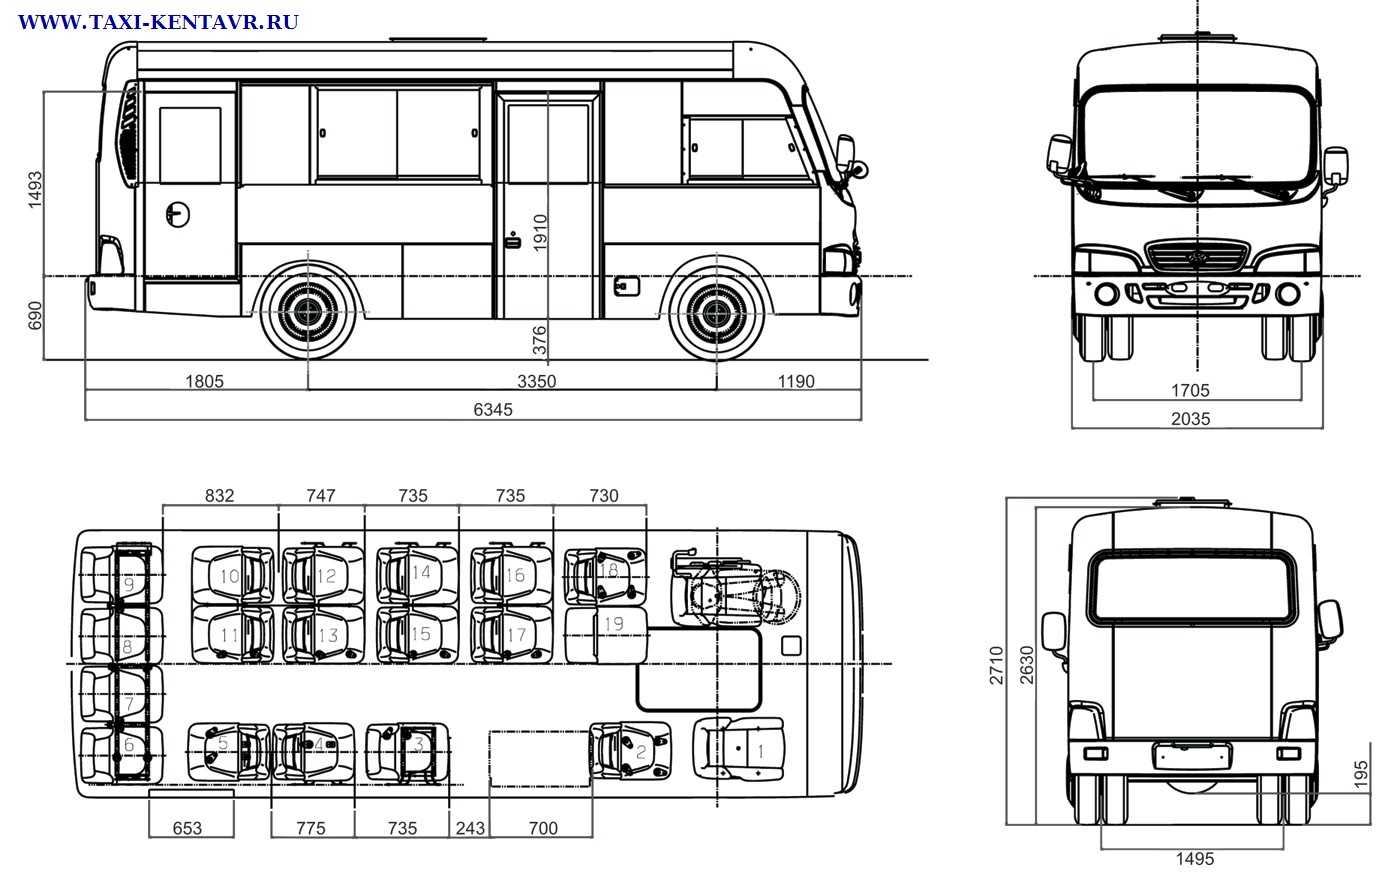 Технические характеристики автобусов среднего класса Hyundai County